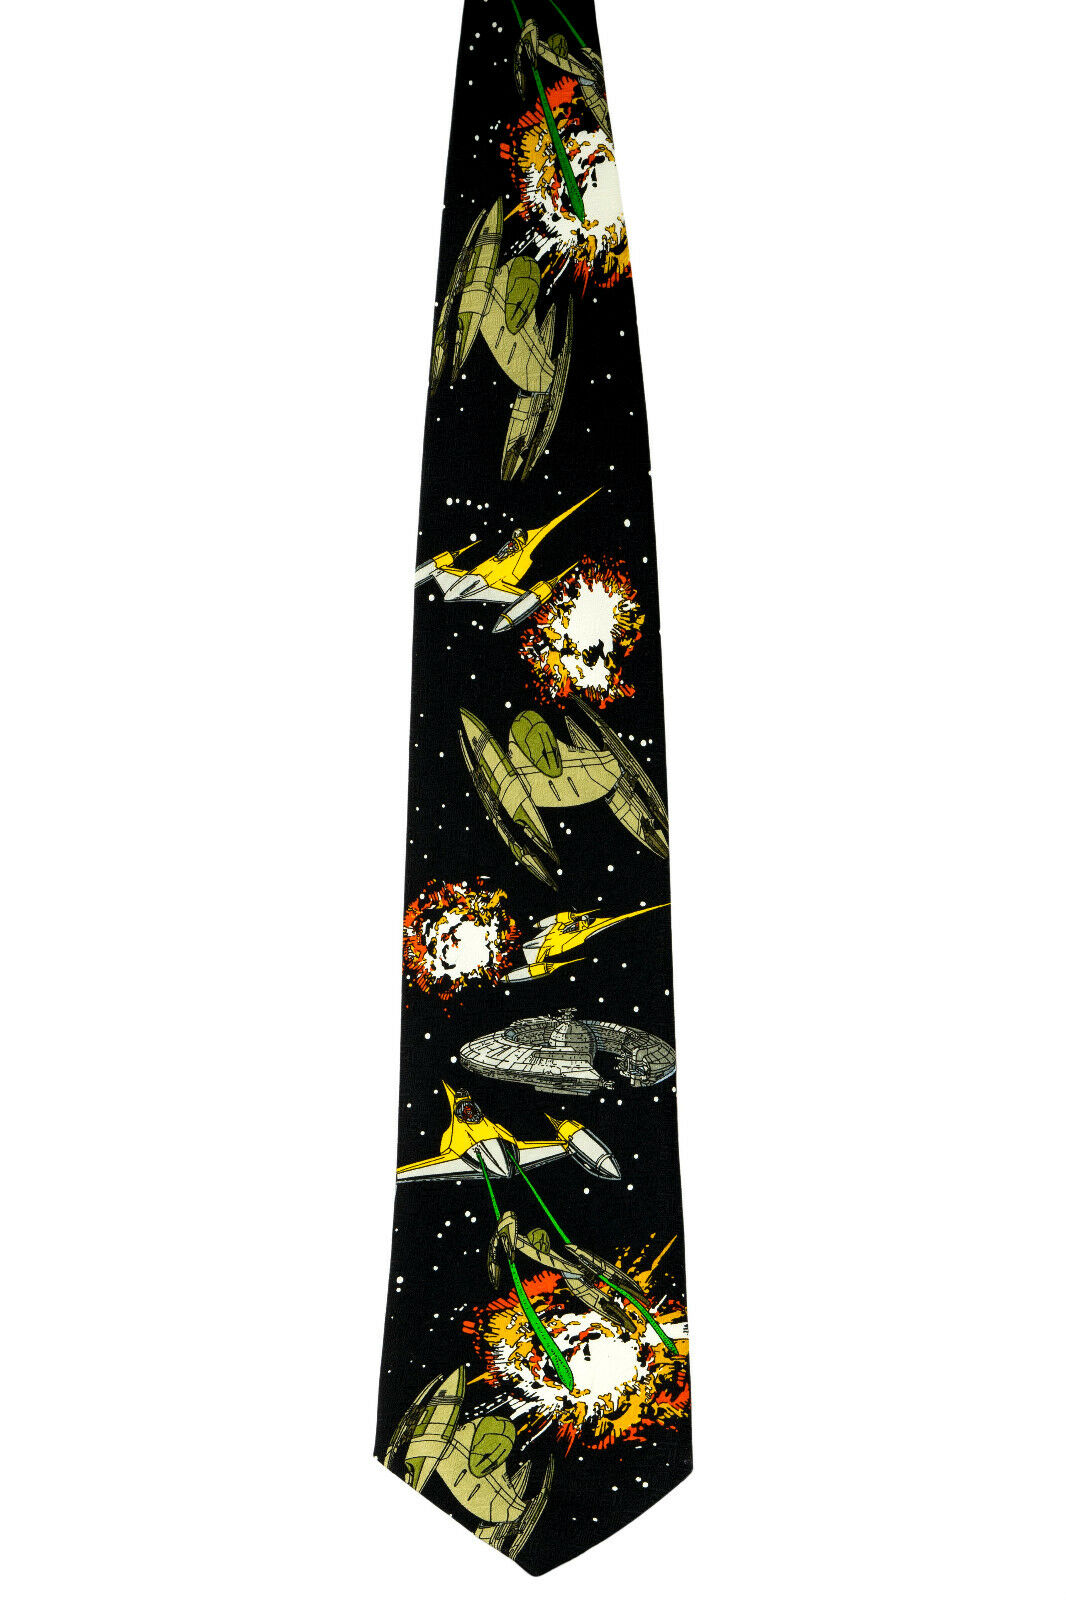 Star Wars Neck Tie - Retro Vintage Starfighters Necktie New W Tags